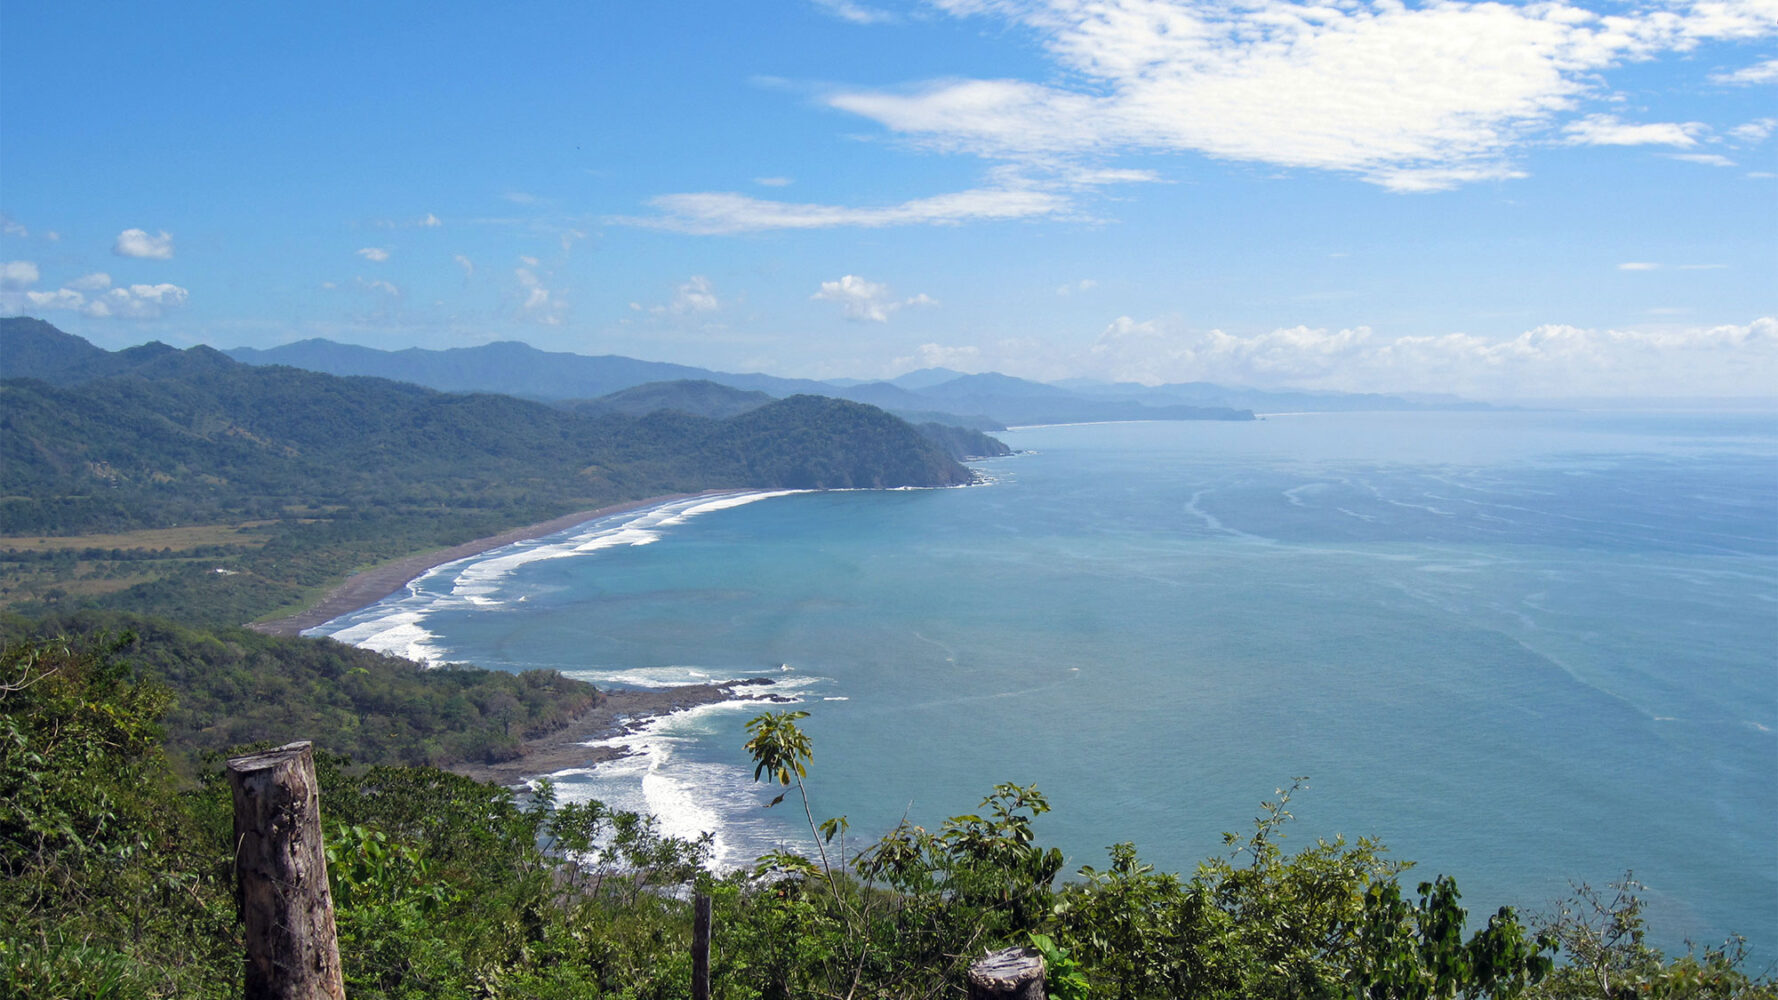 Küstenblick an der Nicoya Halbinsel in Costa Rica: Hier ist das ganze Jahr über beste Reisezeit. Der Himmel ist blau, nur ein paar Wolken sind zu sehen.